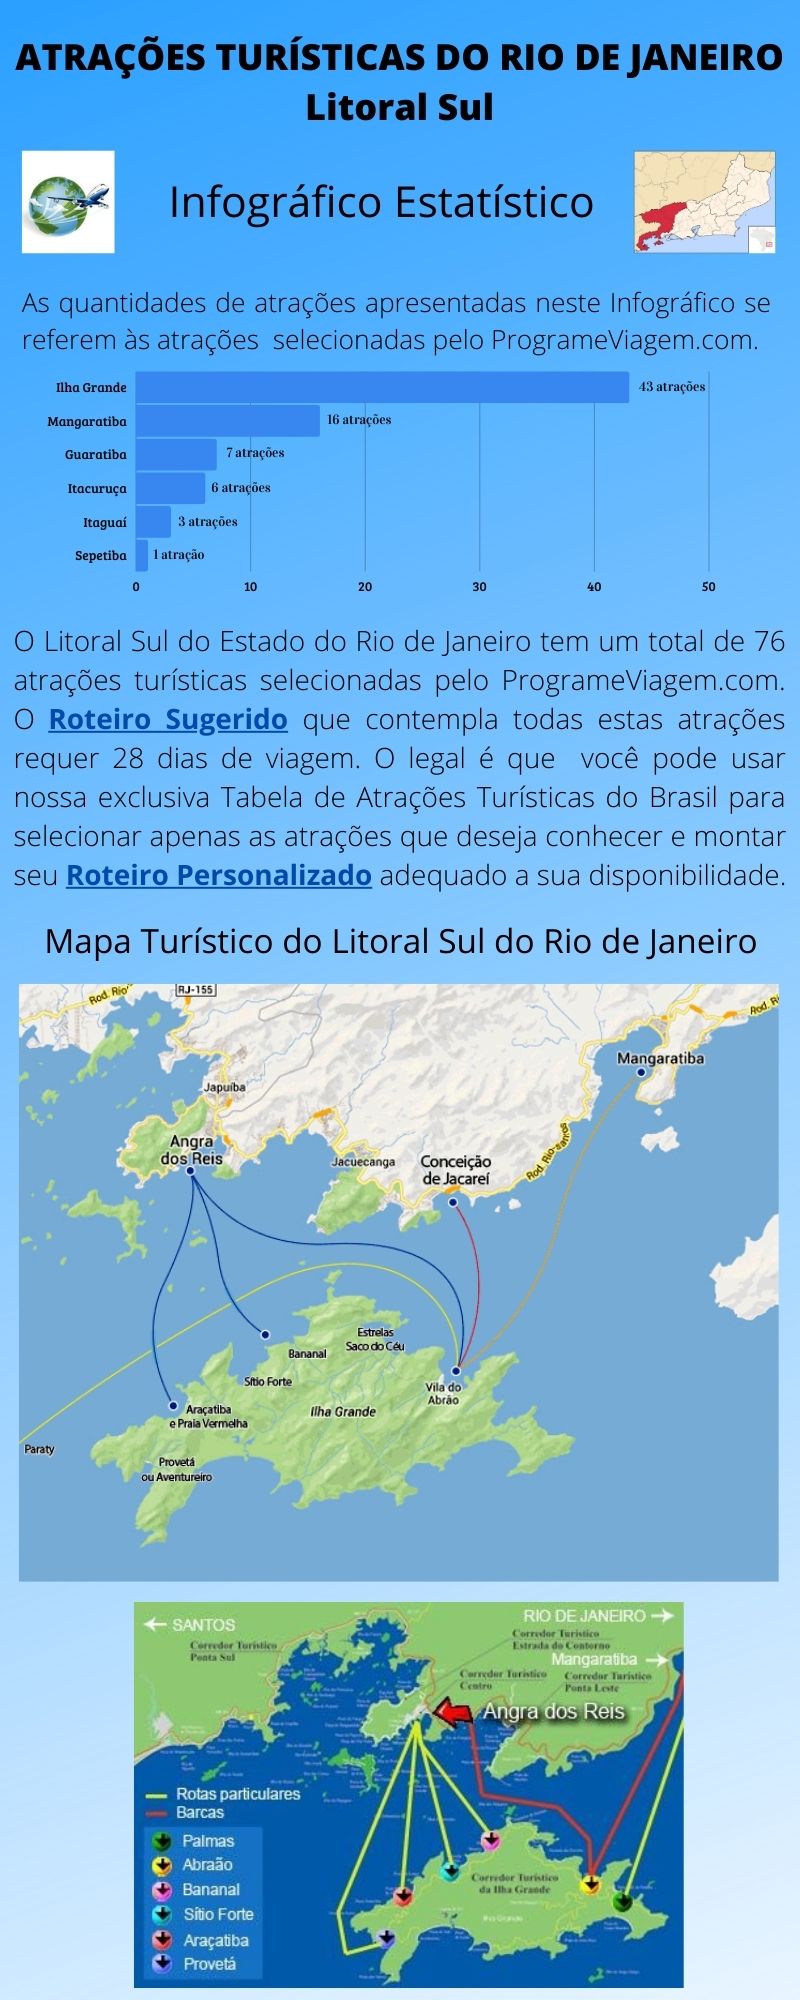 Infográfico Atrações Turísticas do Rio de Janeiro (Litoral Sul) 1